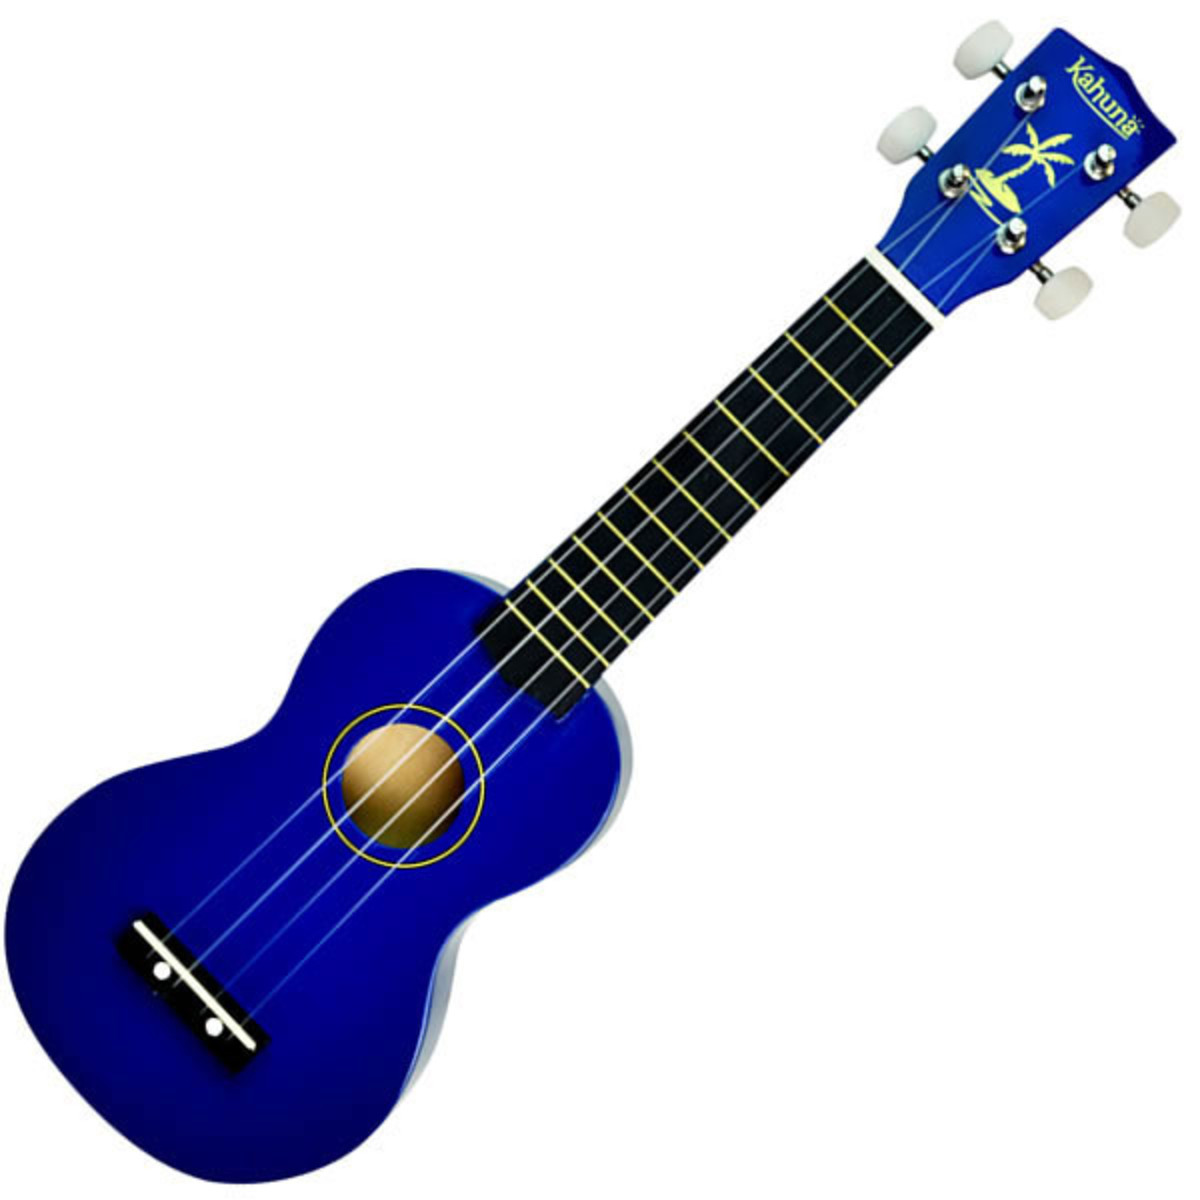 Nhạc cụ Ukulele với thiết kế nhỏ gọn, xinh xắn sẽ là một món nhạc cụ được nhiều bạn ưa chuộng. Việc chơi đàn ukulele cơ bản cũng ko khó dành cho các bạn yêu thích nhạc